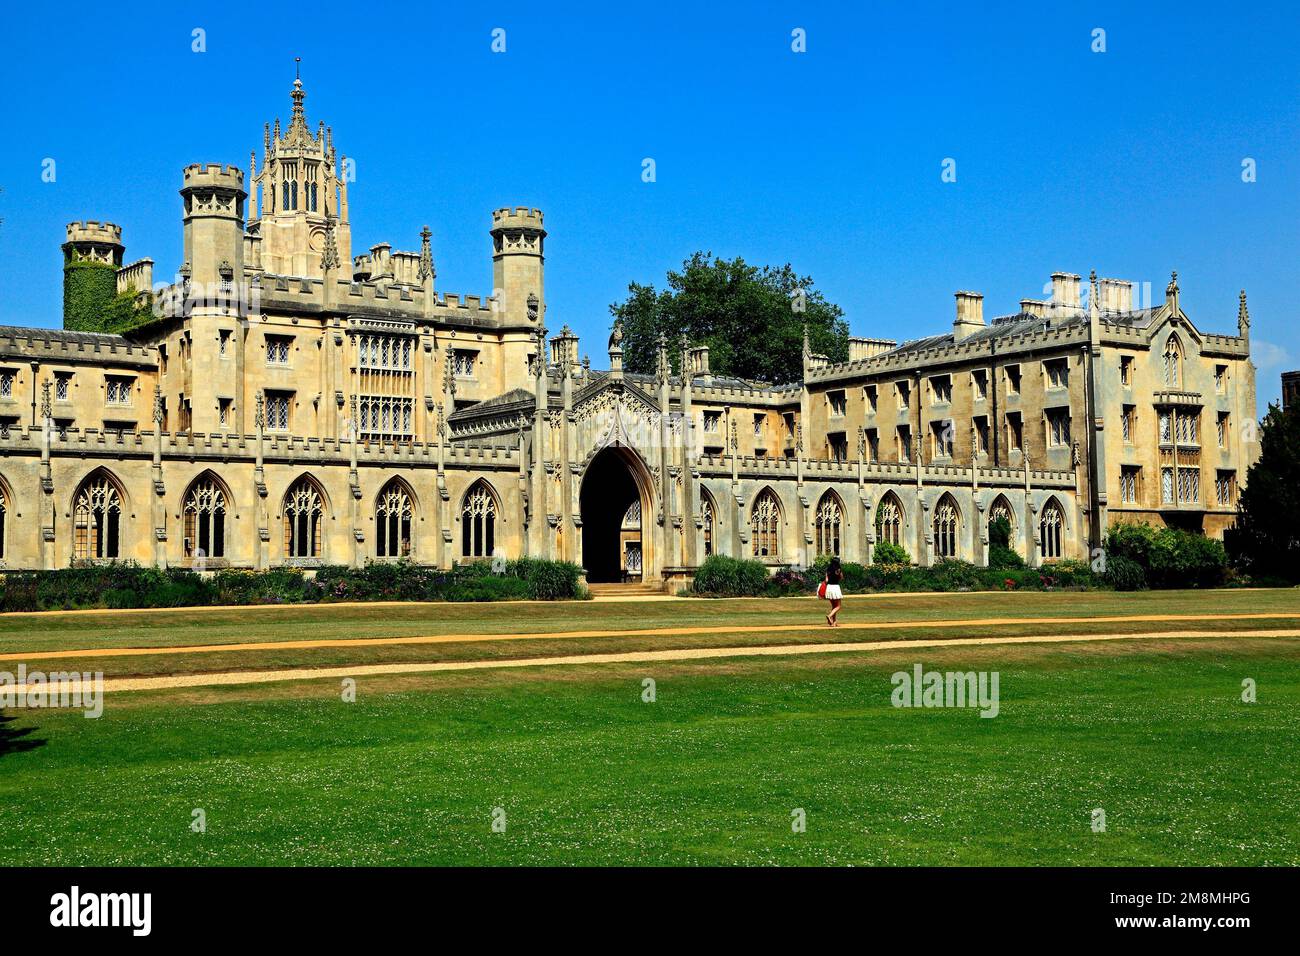 St. Johns College, Université de Cambridge, Cambridge, Angleterre, Royaume-Uni Banque D'Images